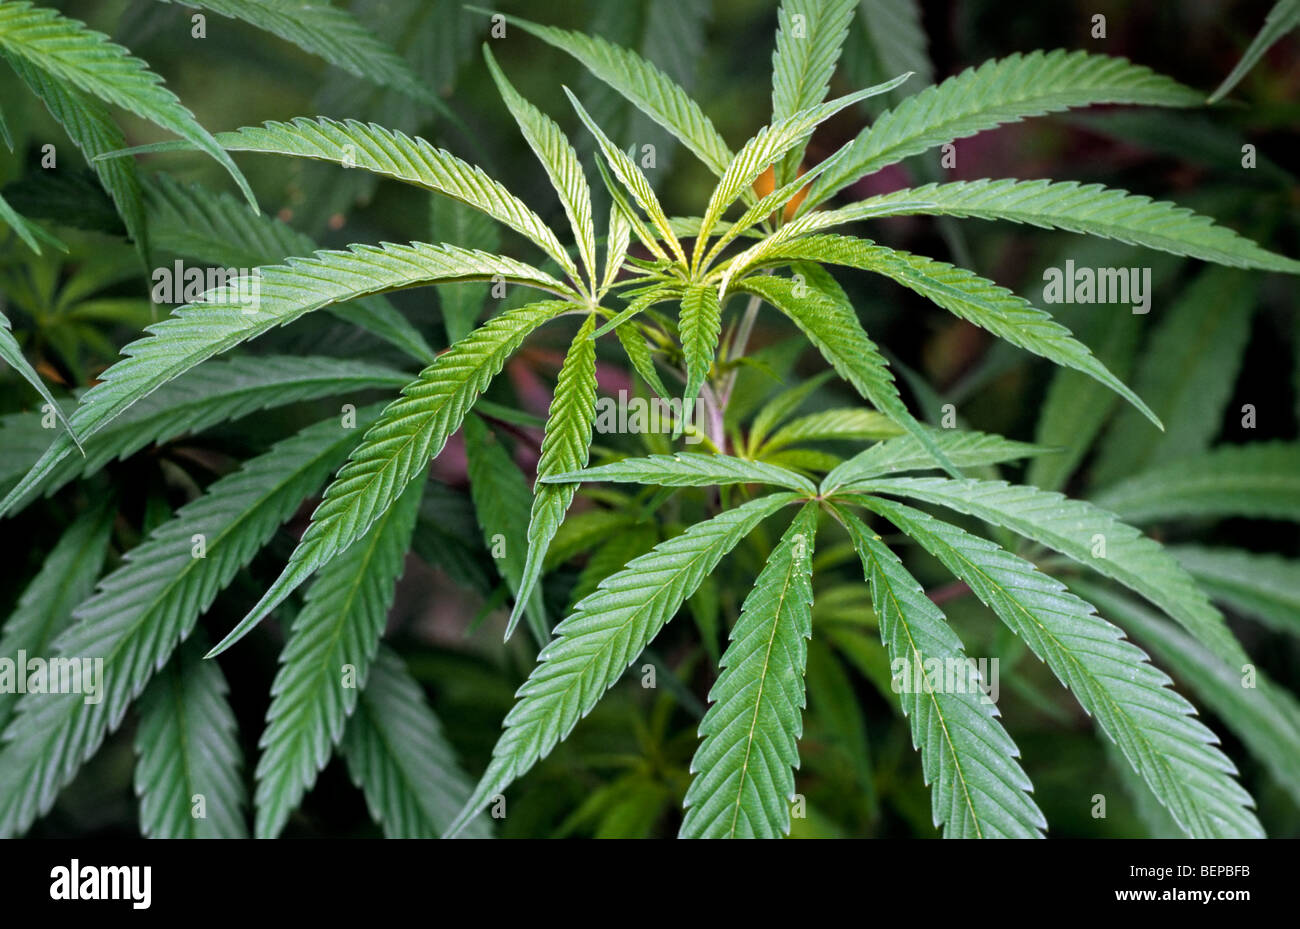 Ohio May Fully Legalize Marijuana Use